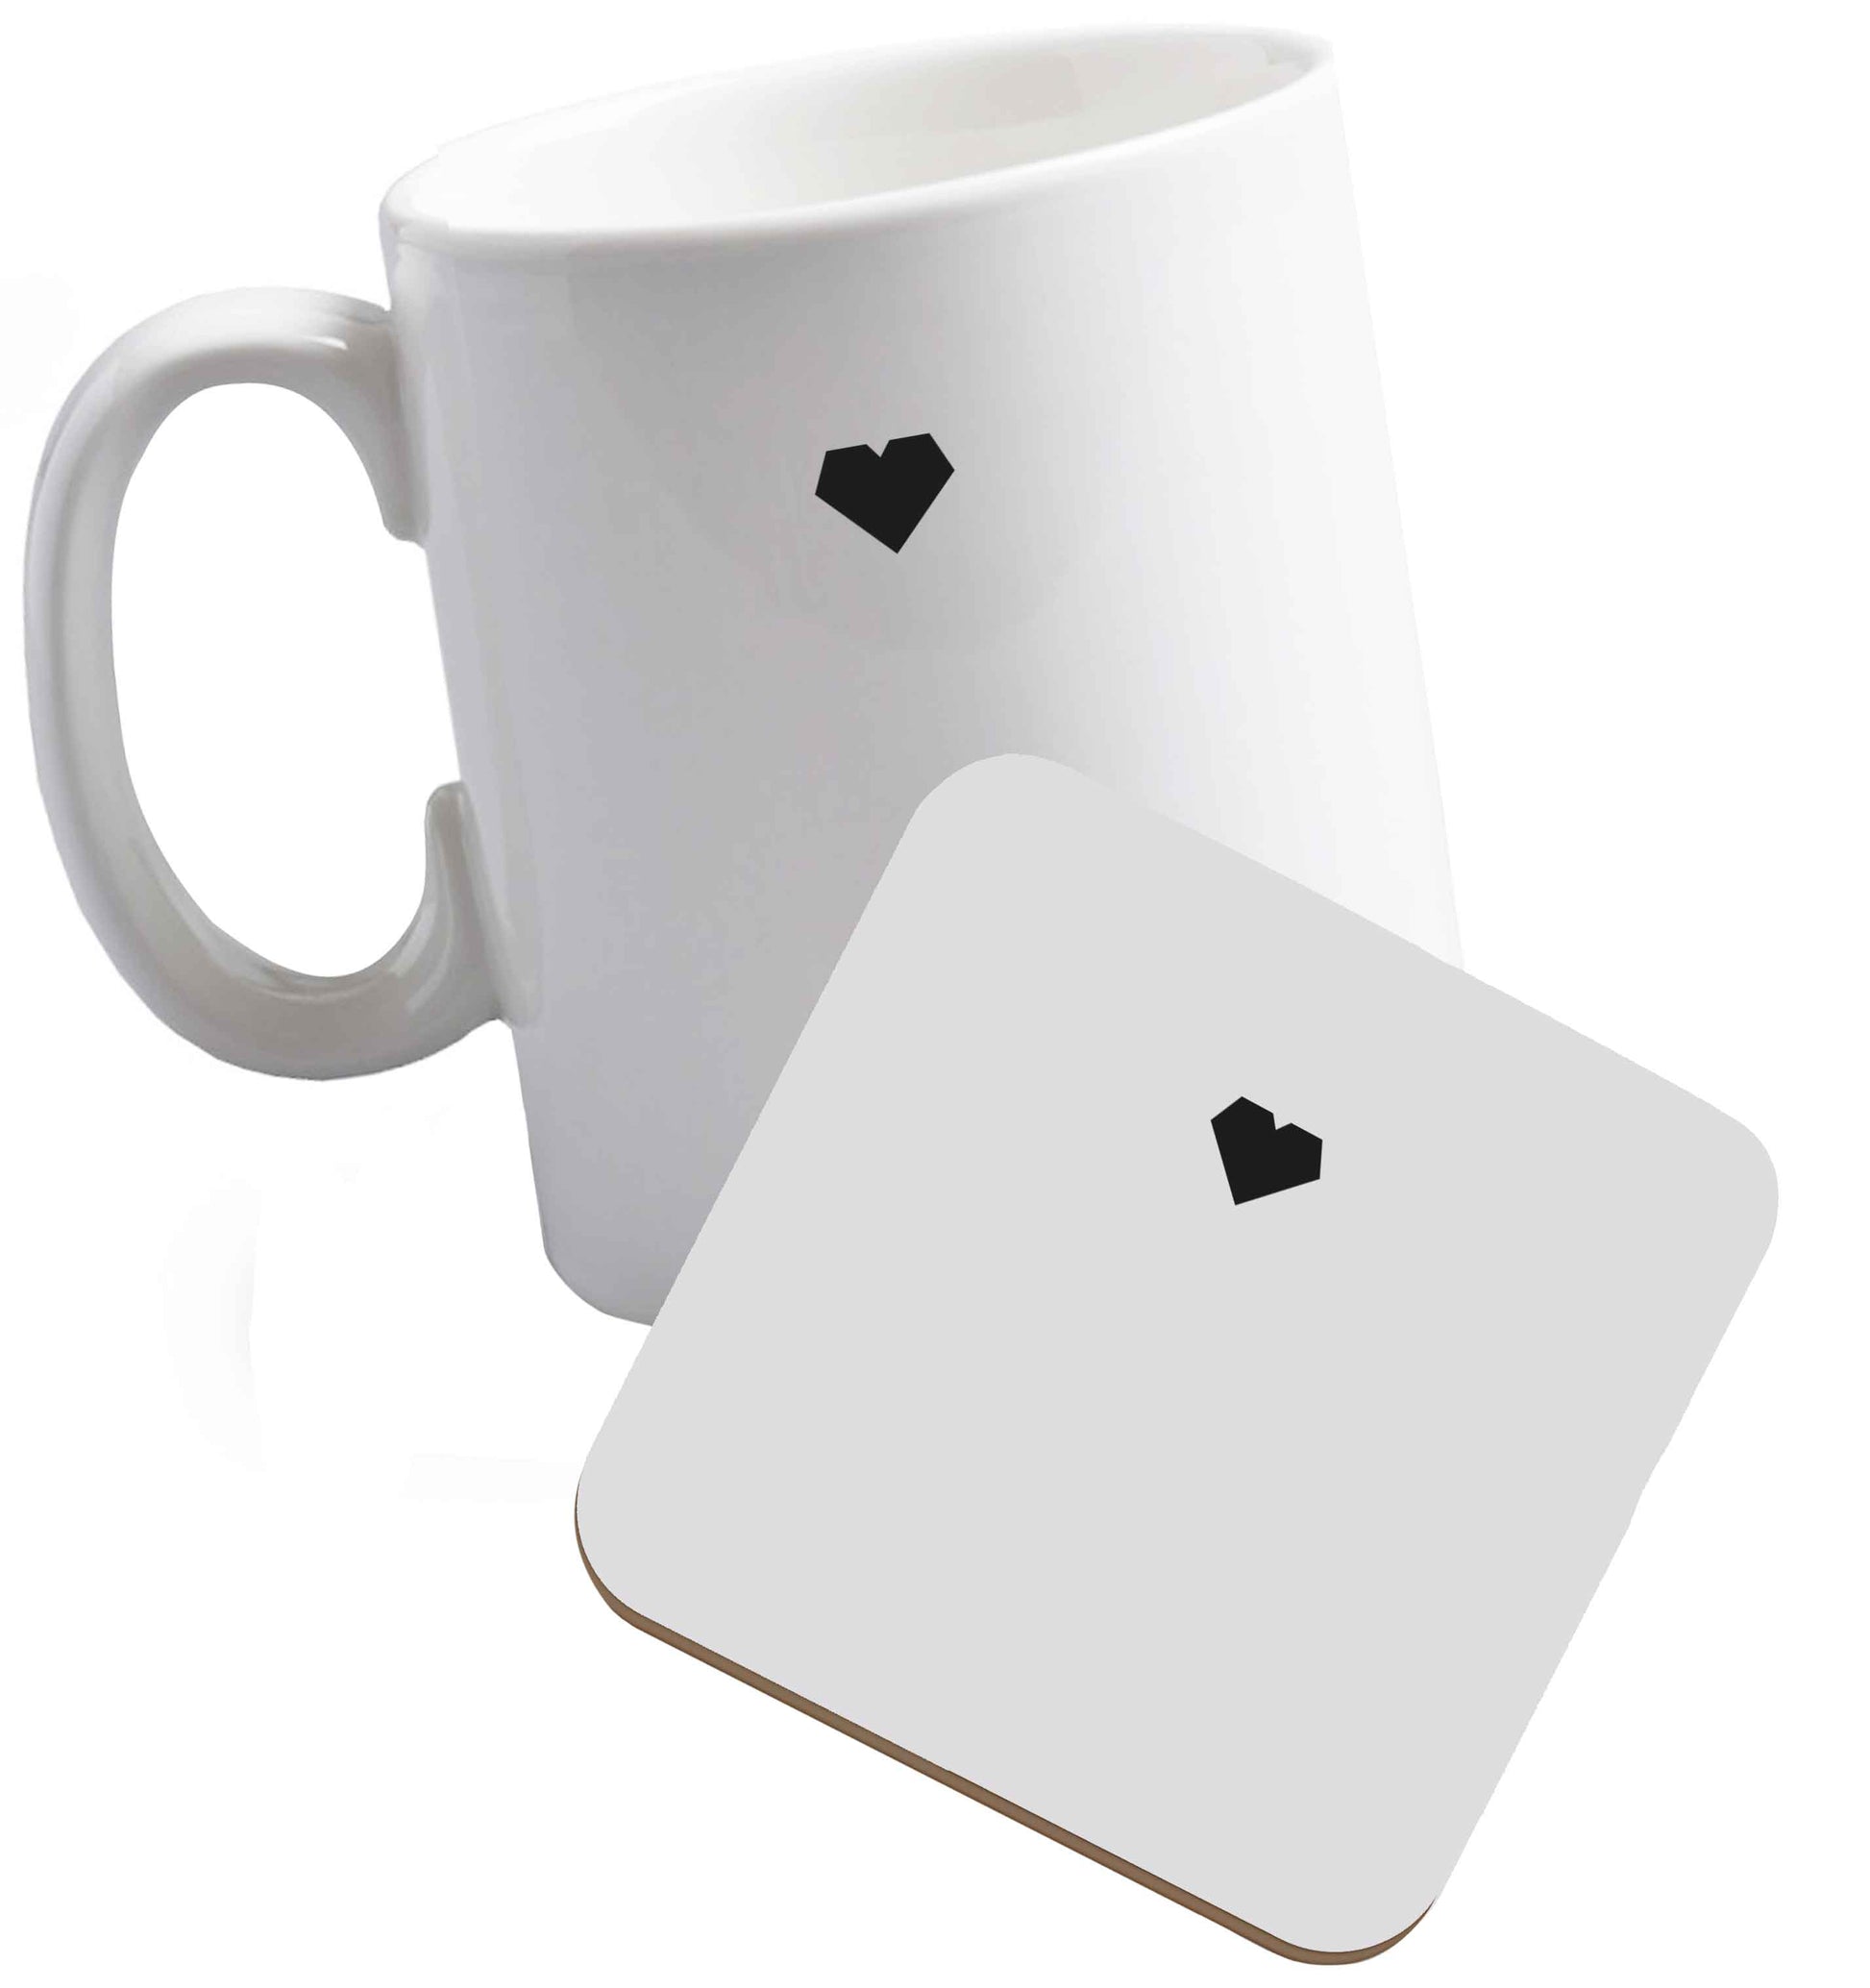 10 oz Tiny heart ceramic mug and coaster set right handed